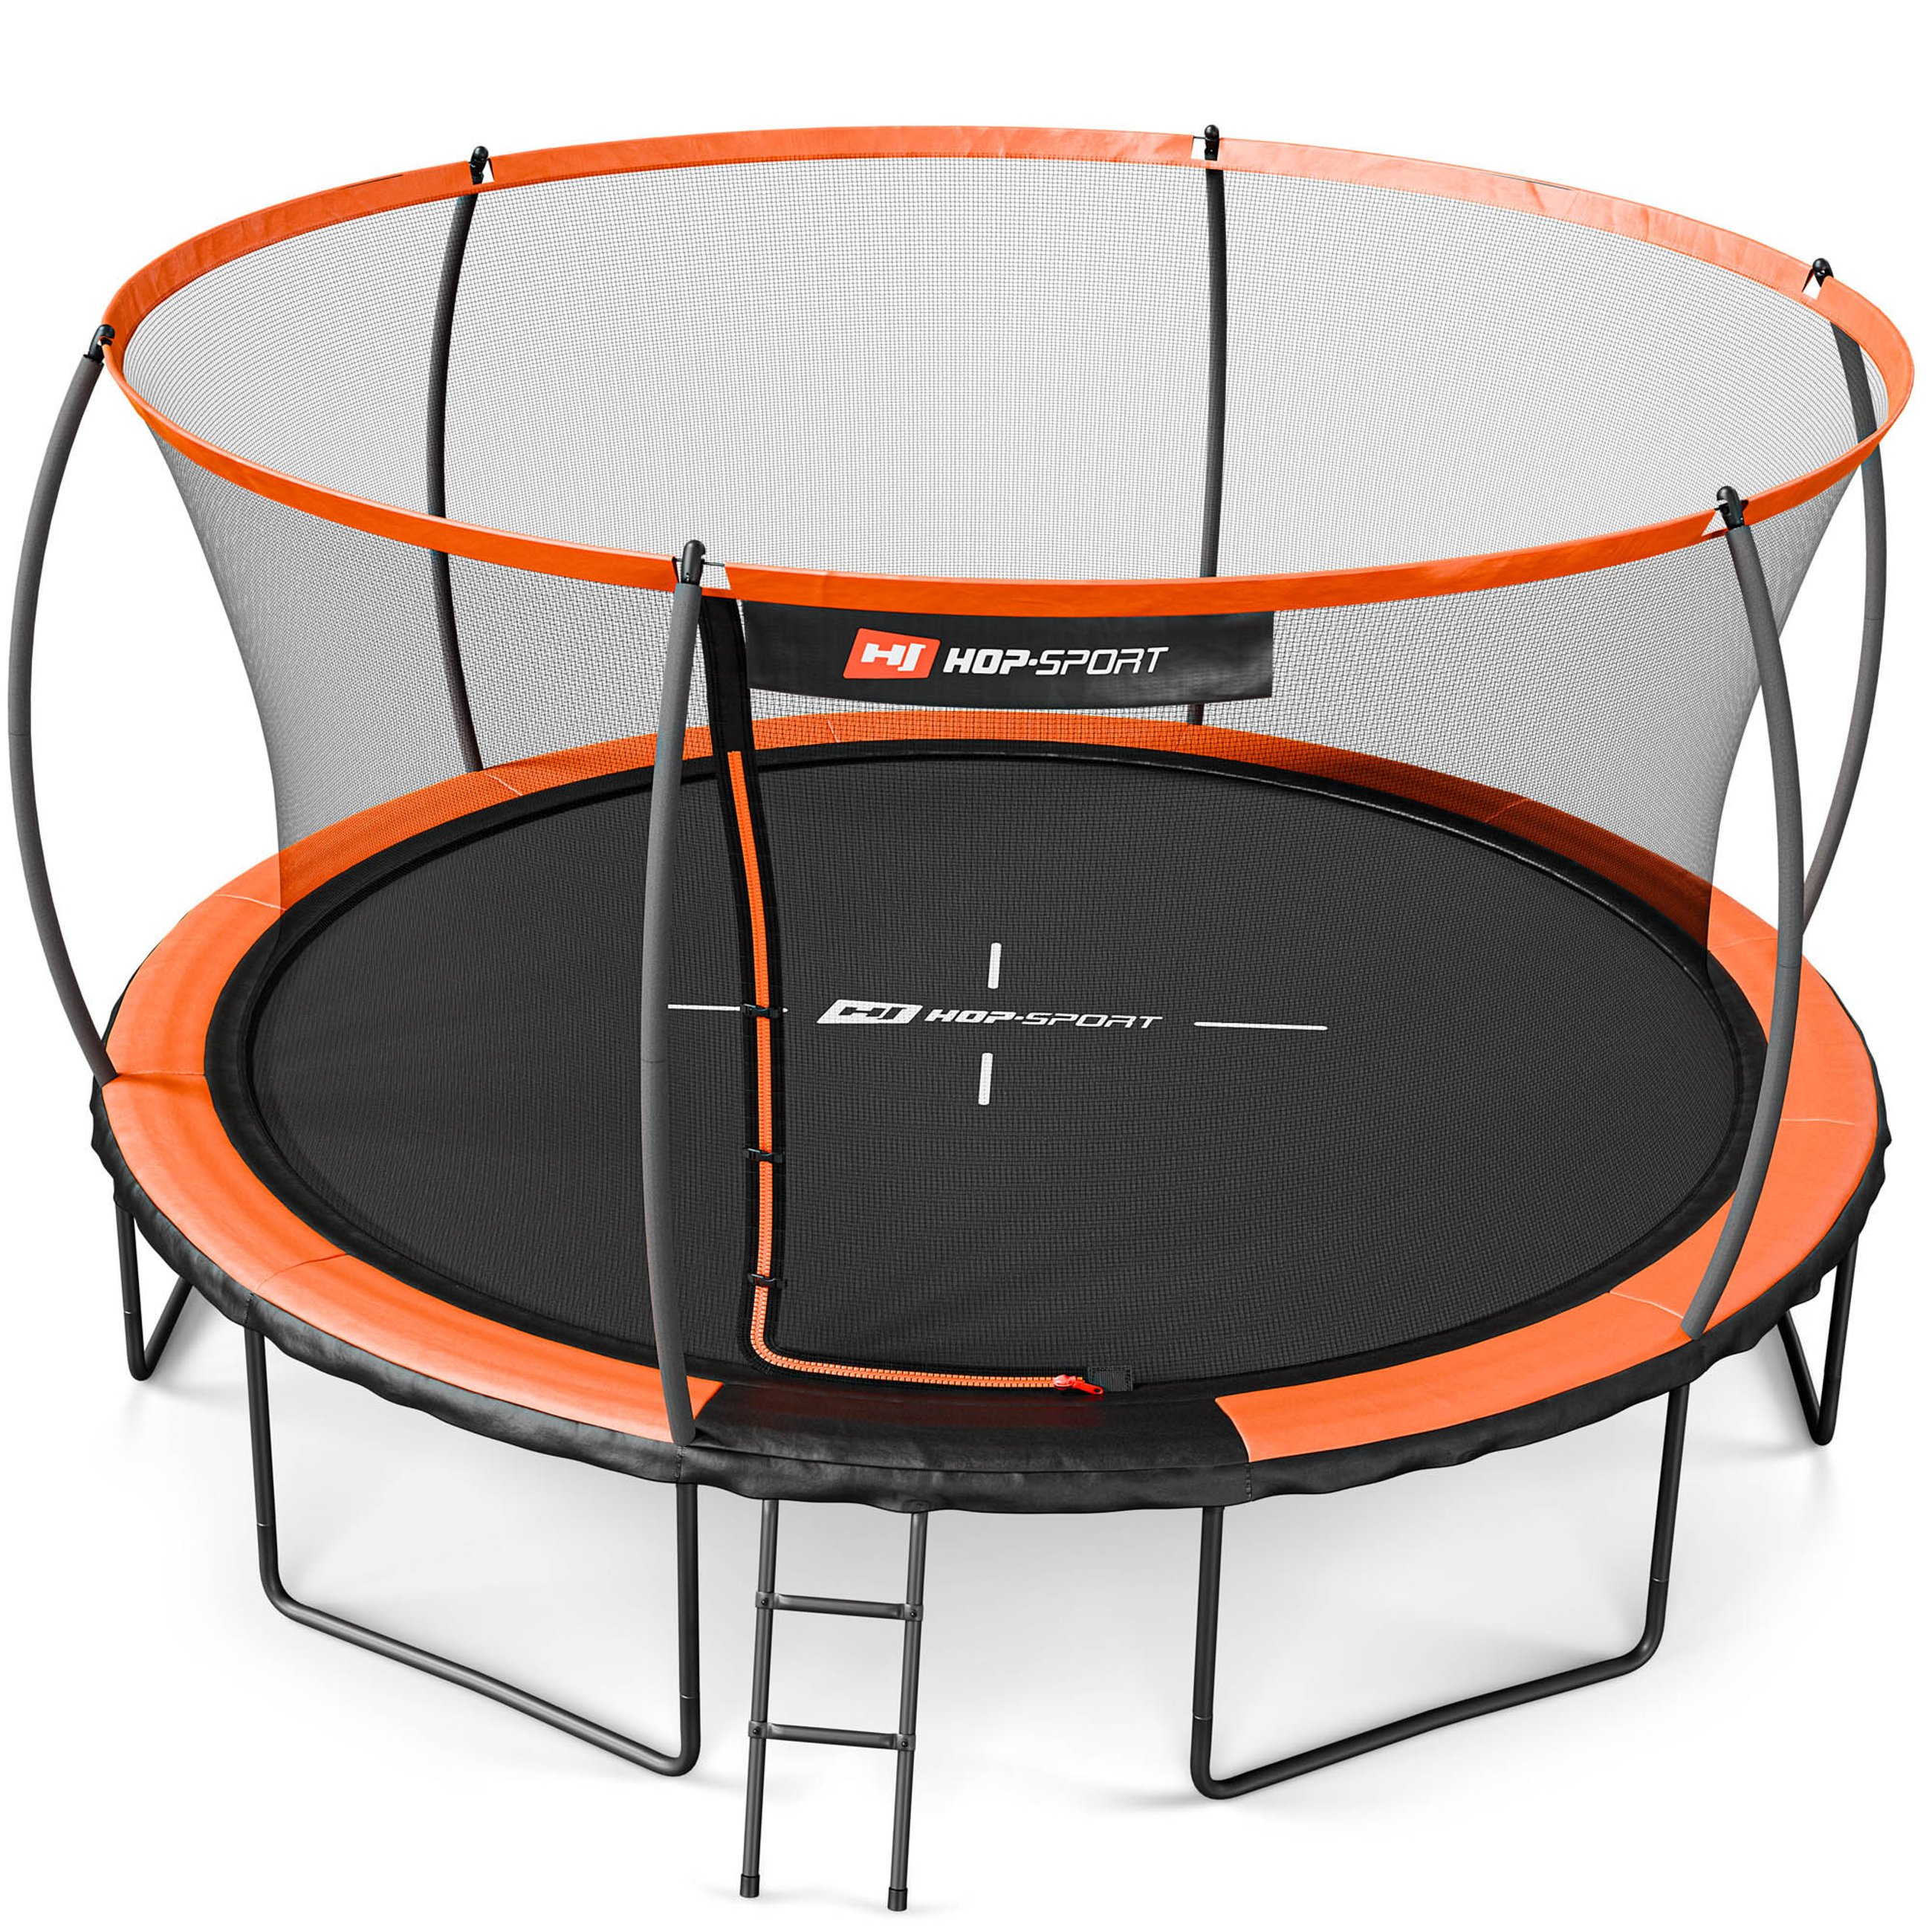 Trampolina Hop-Sport 14ft pomarańczowo-czarna, idealna do skakania na świeżym powietrzu, z certyfikatem bezpieczeństwa.